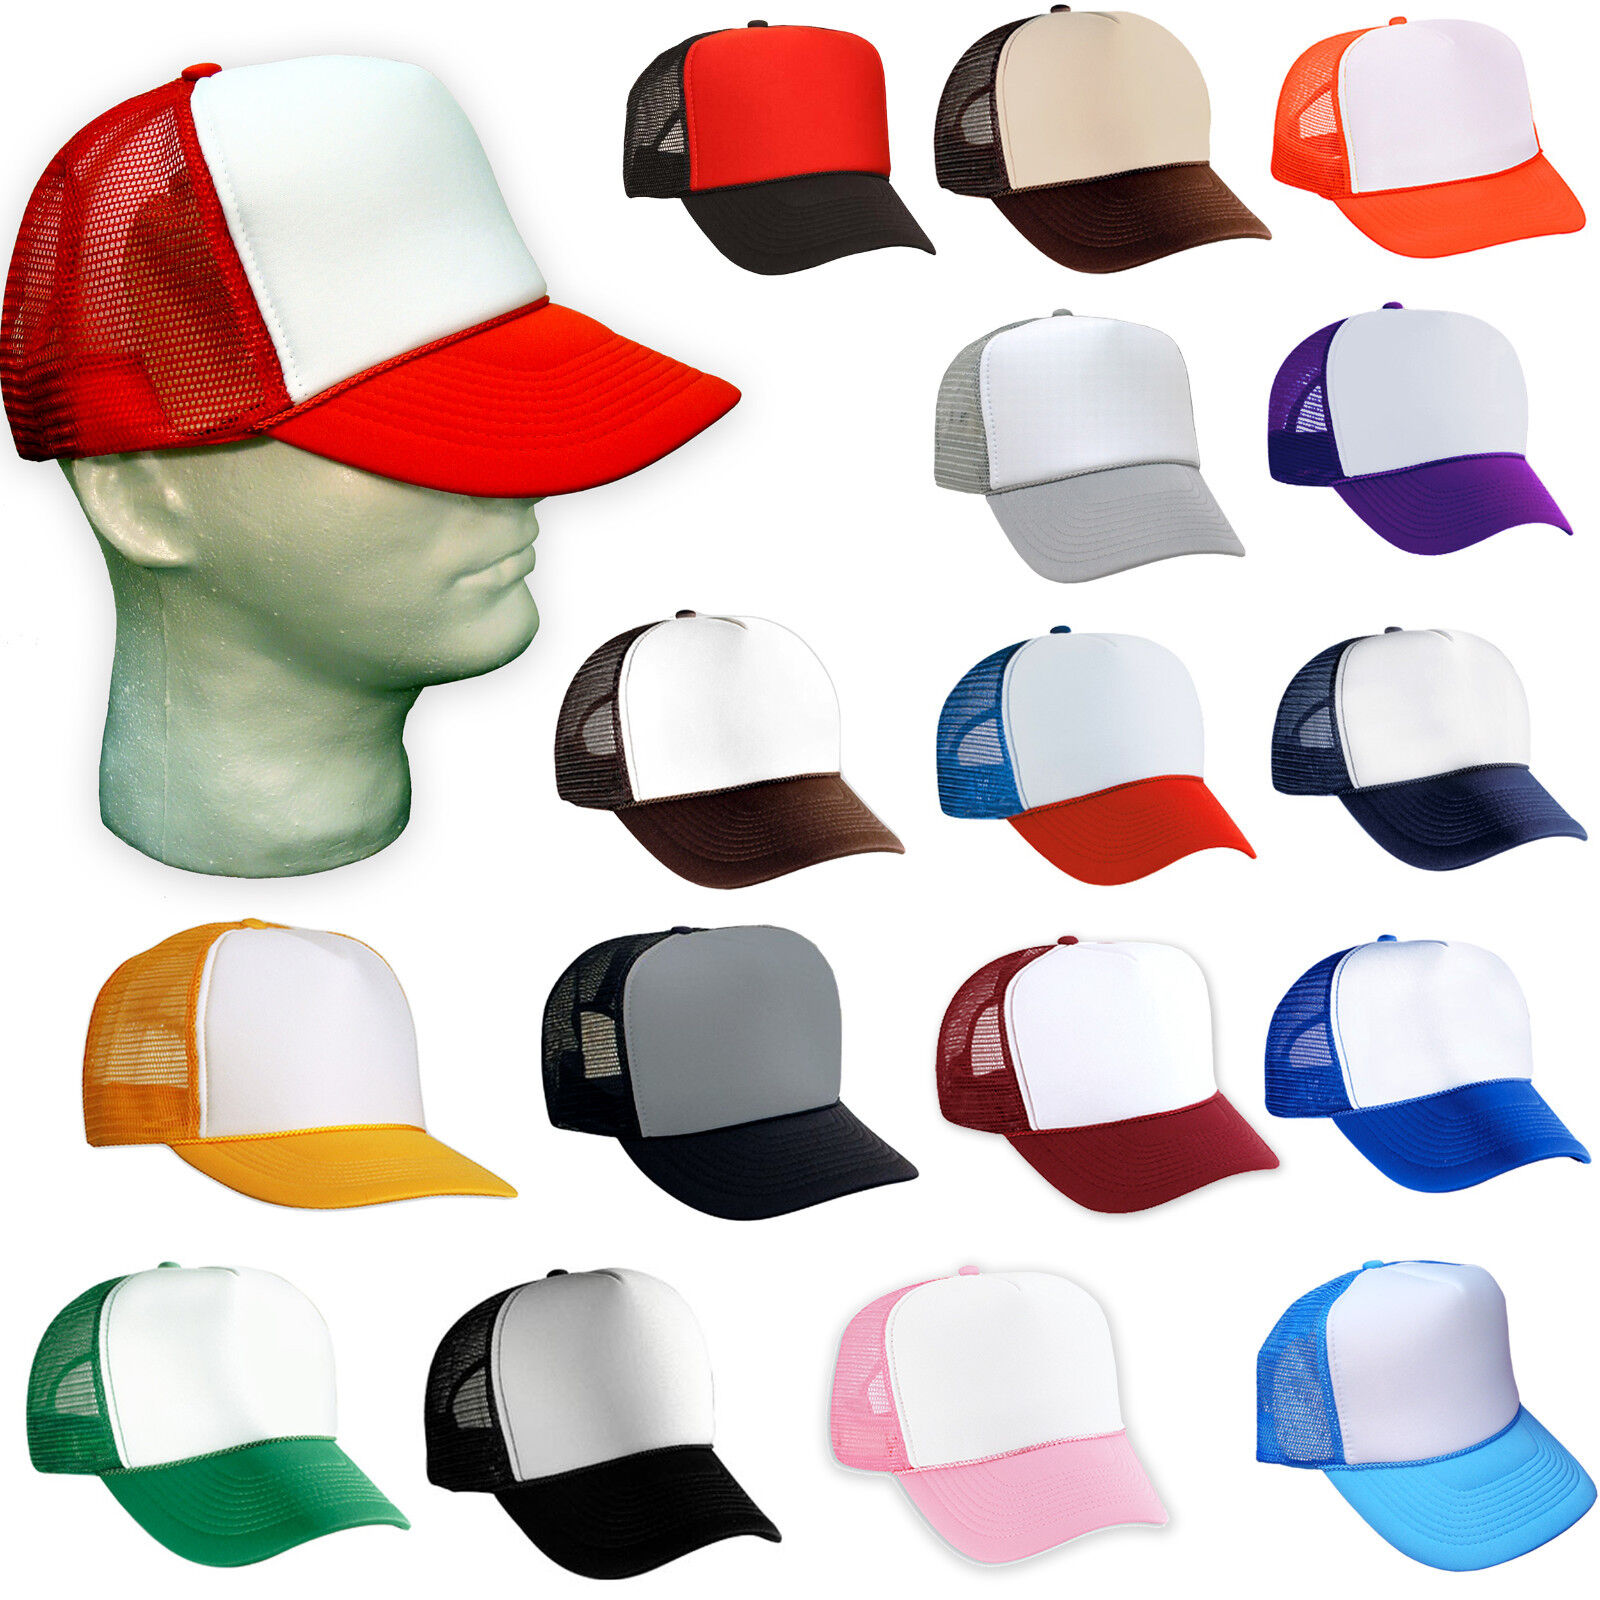 Wholesale trucker hats: Bulk Deals for Stylish Headwear插图4